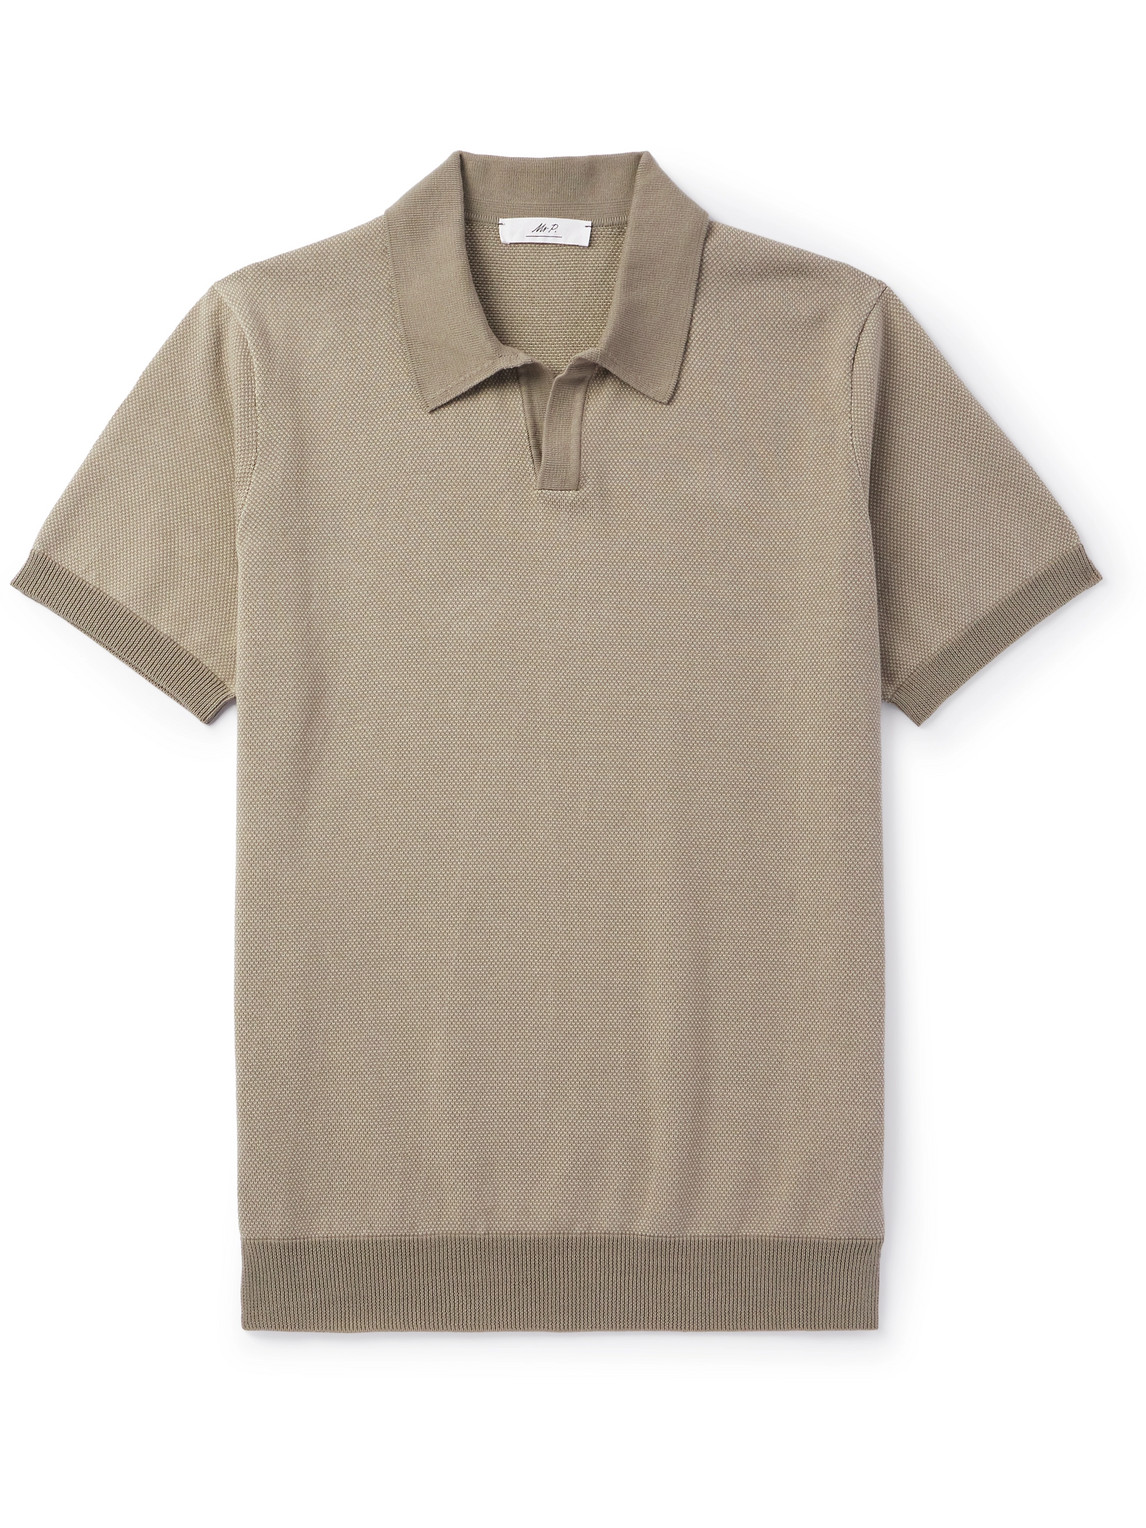 Mr P. - Honeycomb-Knit Cotton Polo Shirt - Men - Neutrals - L von Mr P.